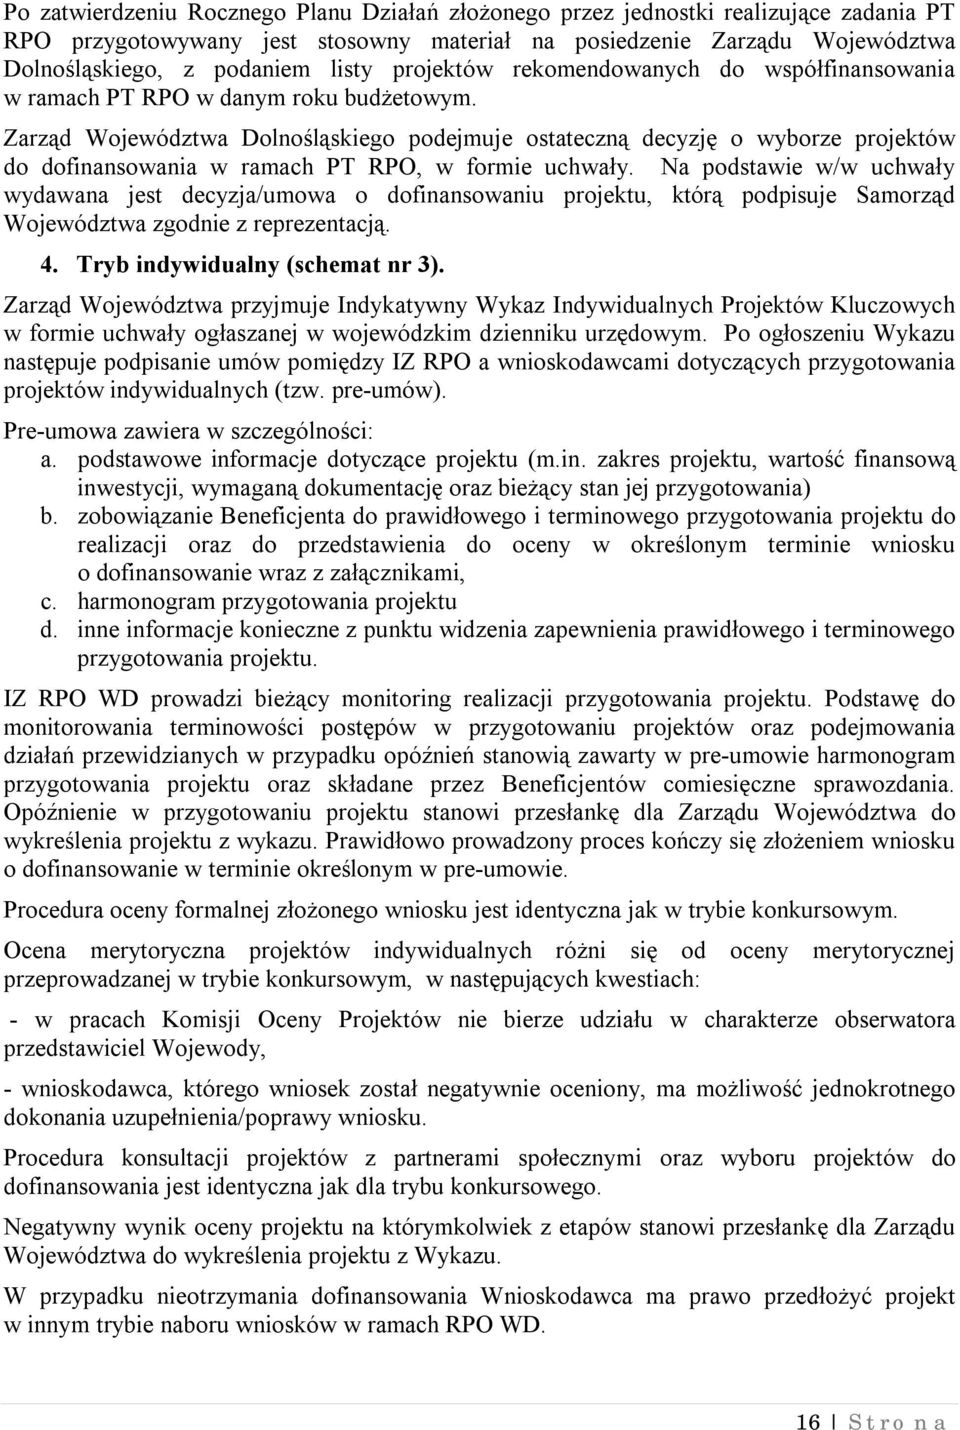 Zarząd Województwa Dolnośląskiego podejmuje ostateczną decyzję o wyborze projektów do dofinansowania w ramach PT RPO, w formie uchwały.